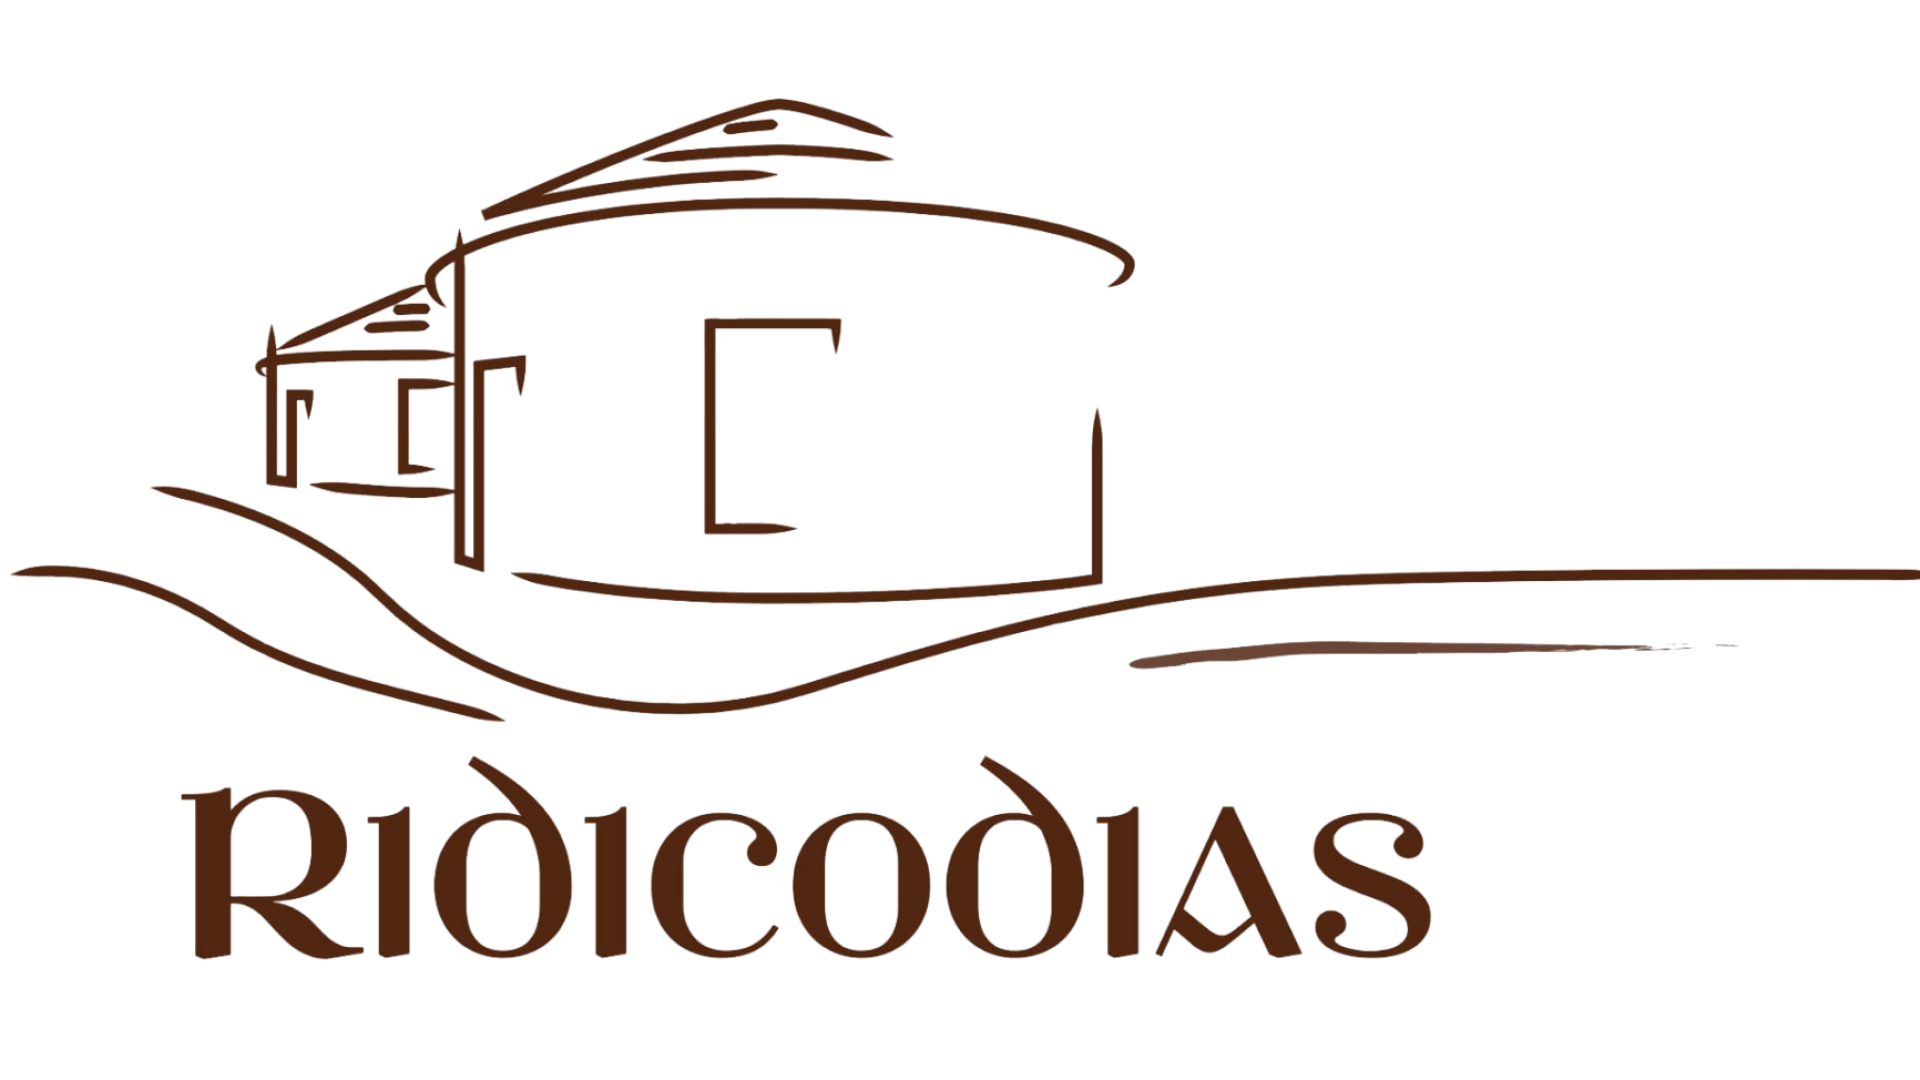 Logotipo Pallozas Ridicodias